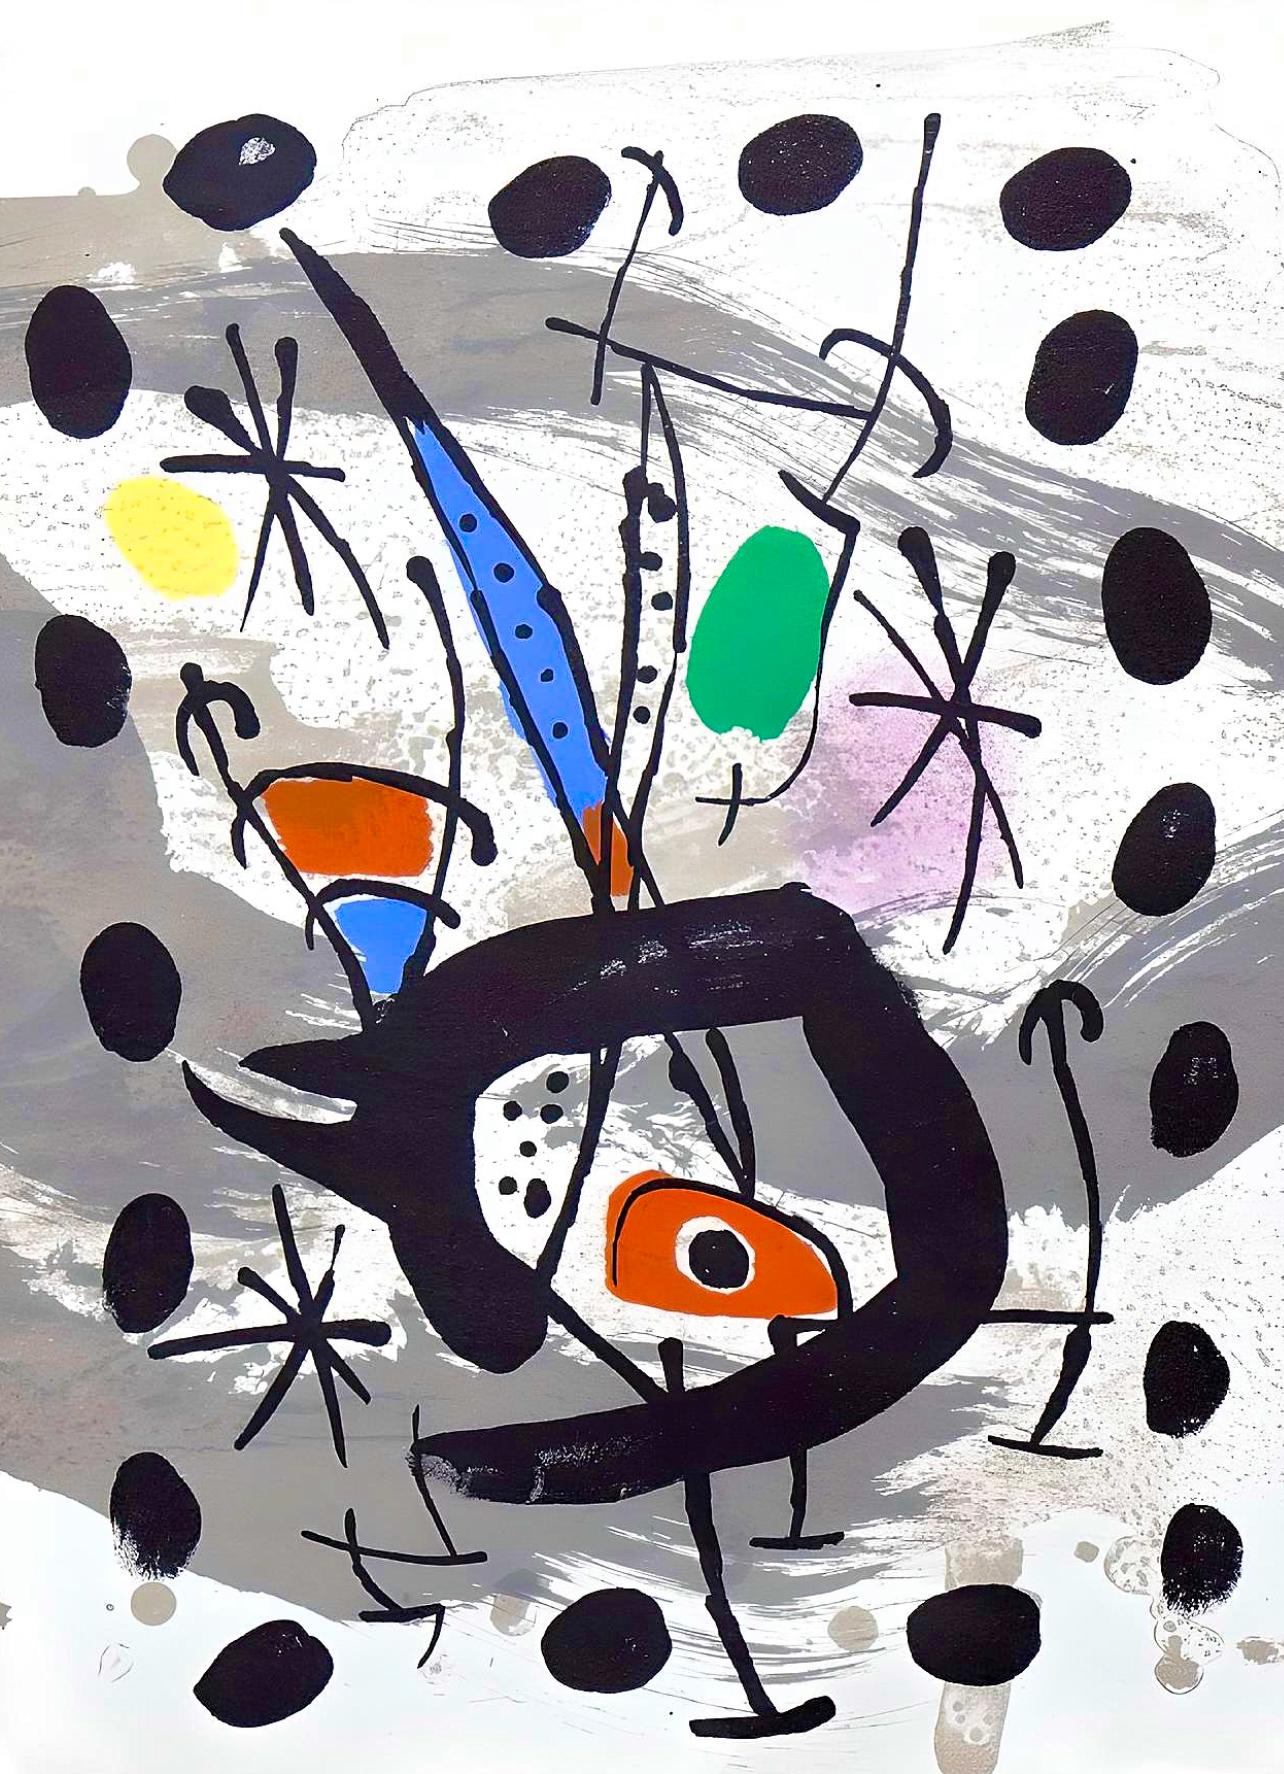 Miró, Solar Bird, Lunar Bird, Sparks (Mourlot, 567), XXe Siècle (after) - Modern Print by Joan Miró